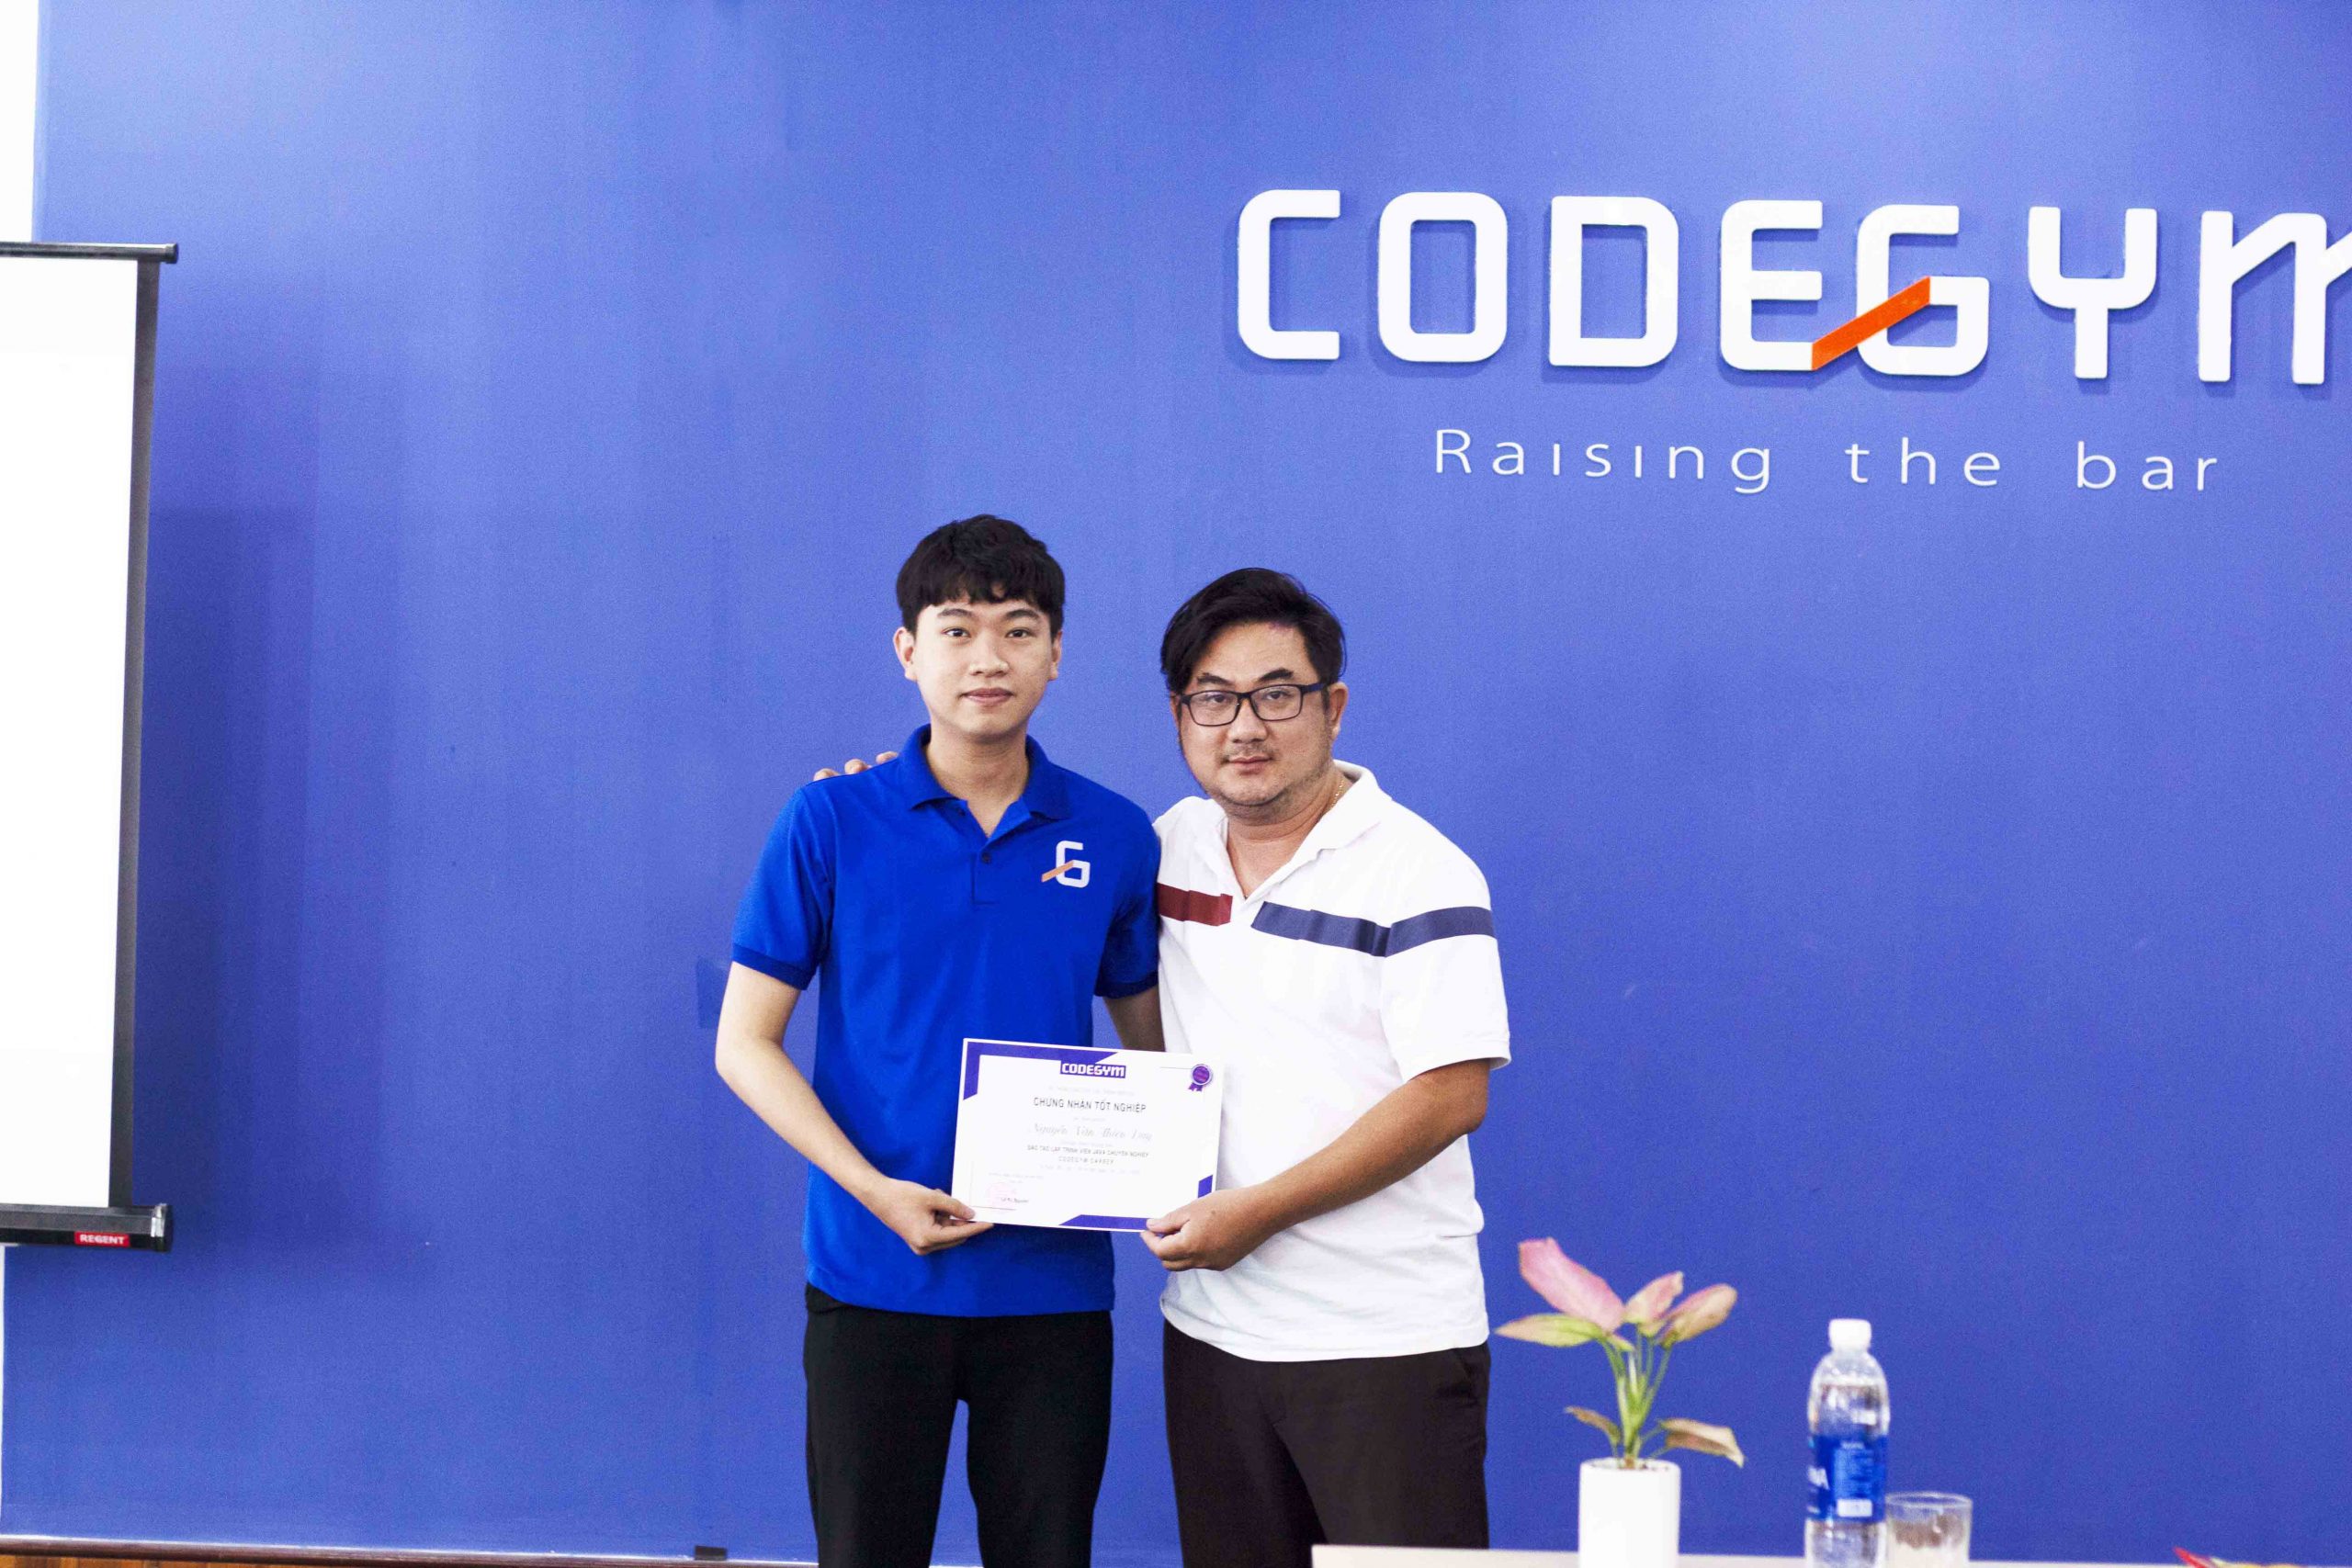 Giám đốc CodeGym Đà Nẵng trao chứng chỉ tốt nghiệp